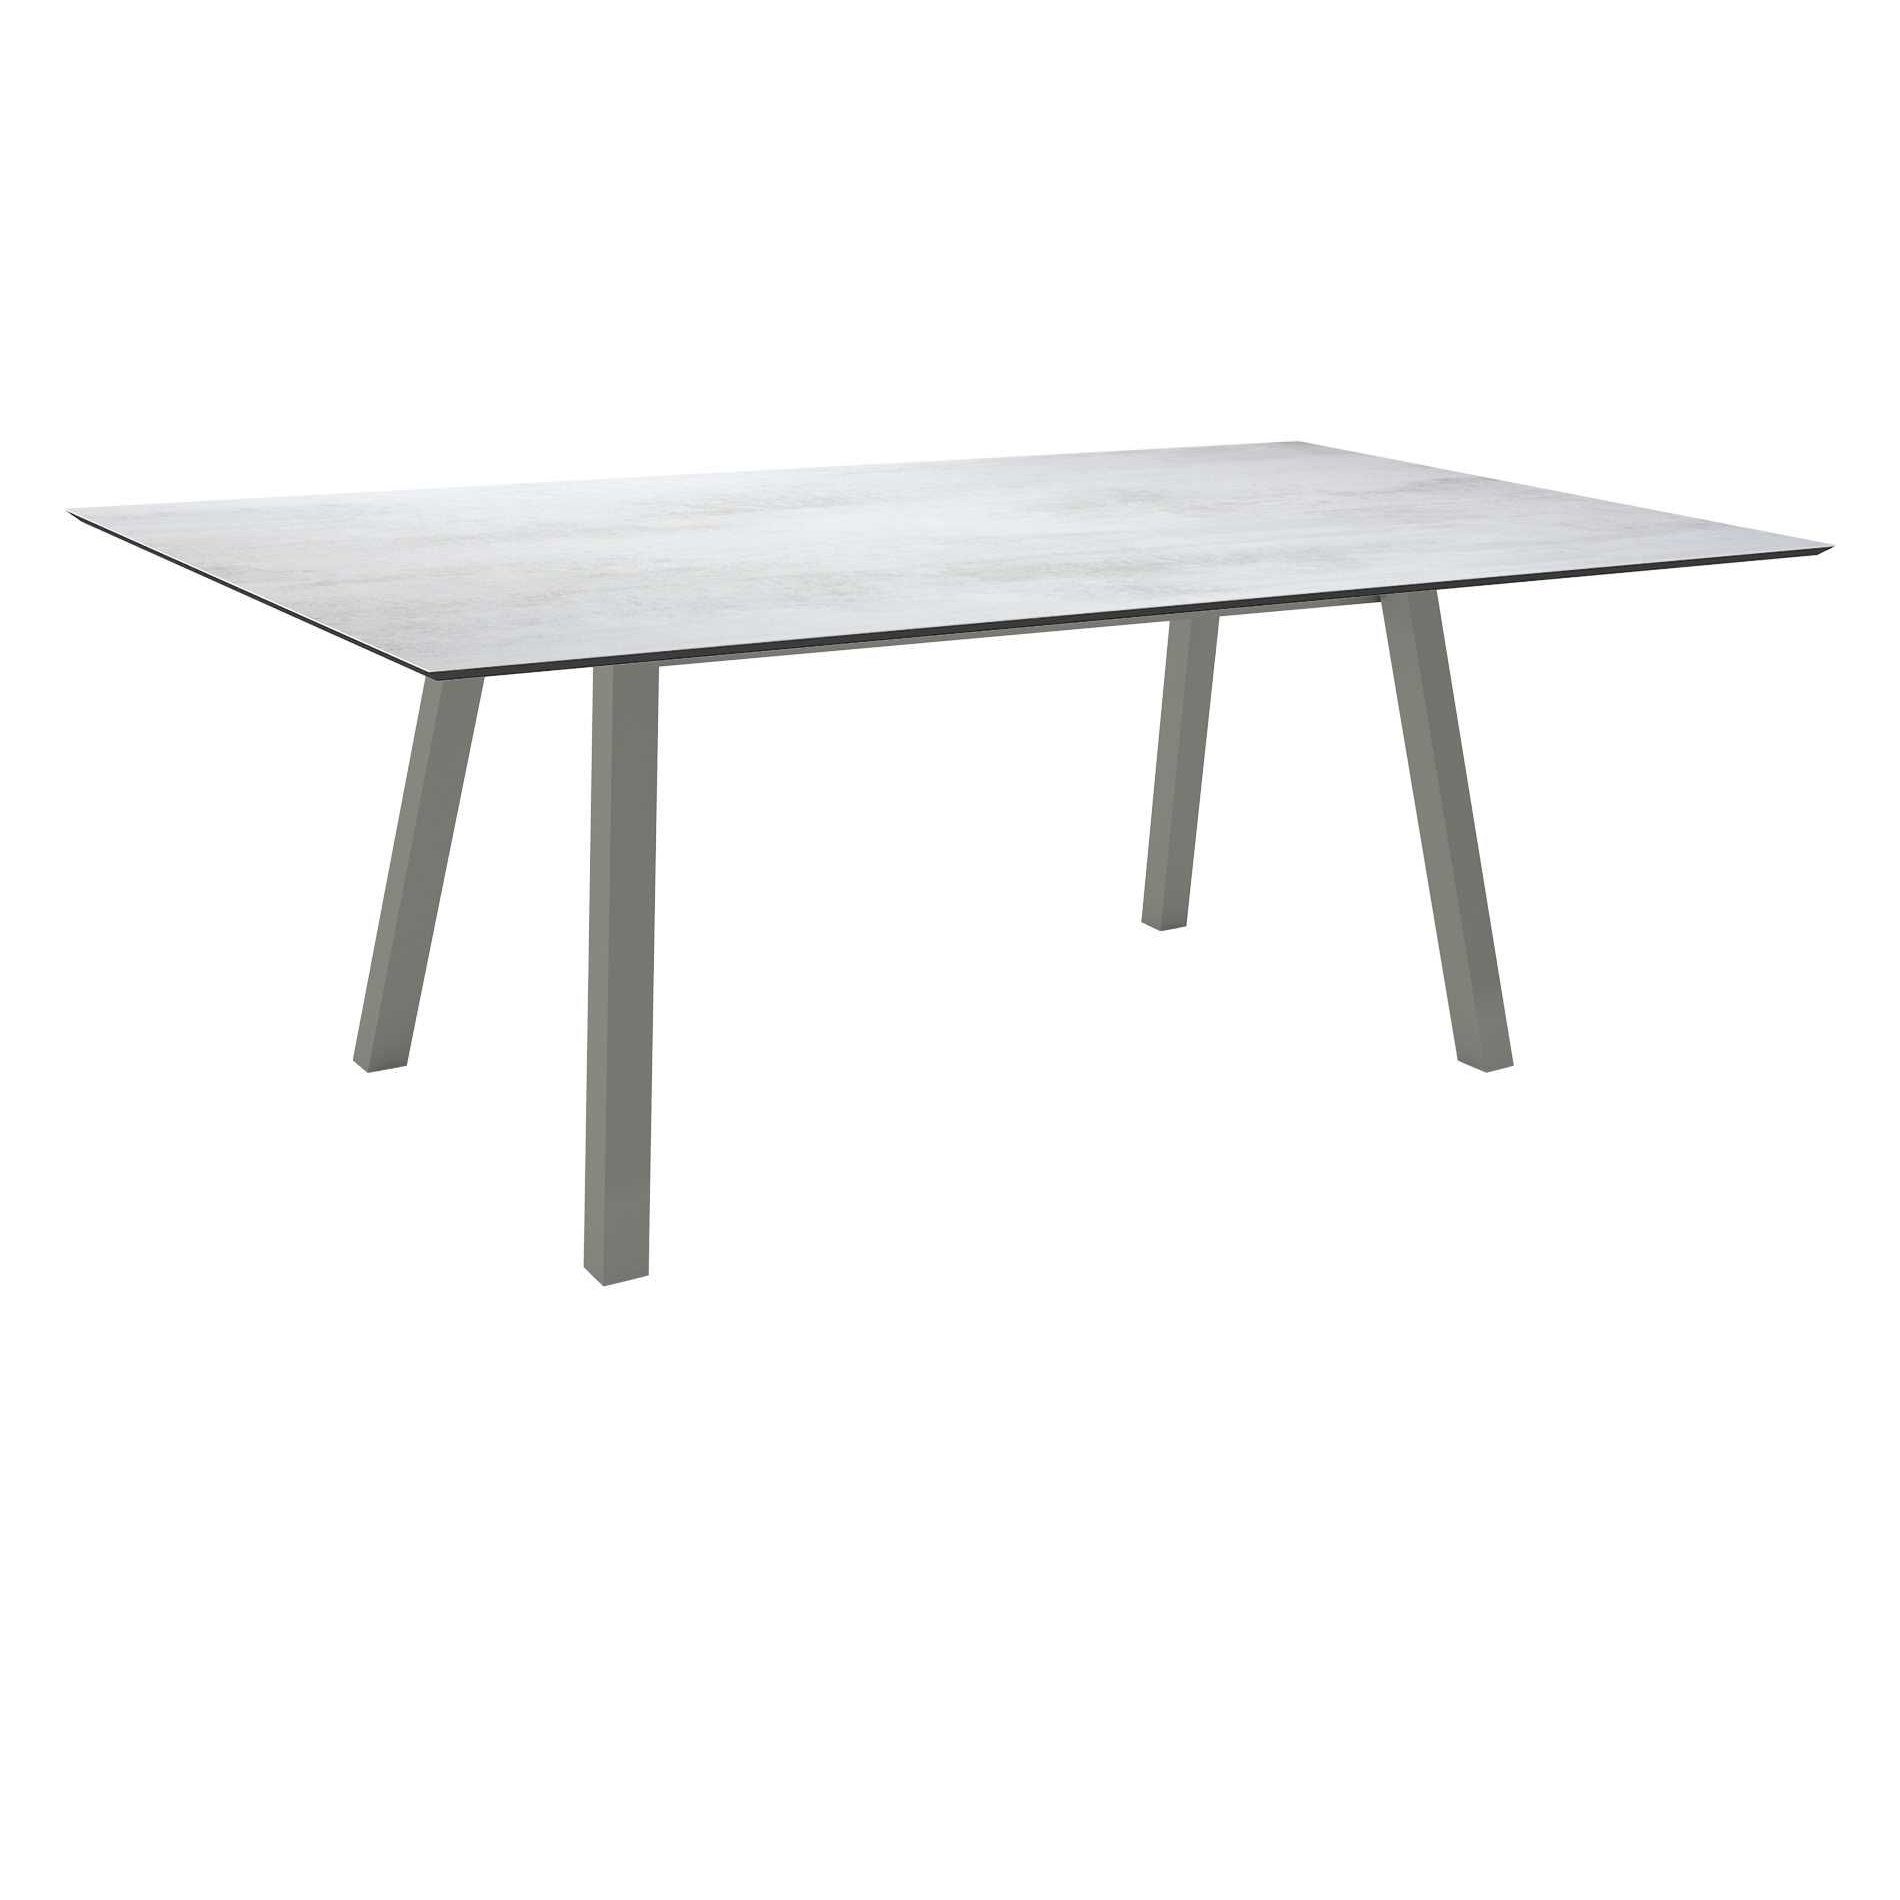 Stern Tisch "Interno", Größe 180x100cm, Alu graphit, Vierkantrohr, Tischplatte HPL Zement Hell